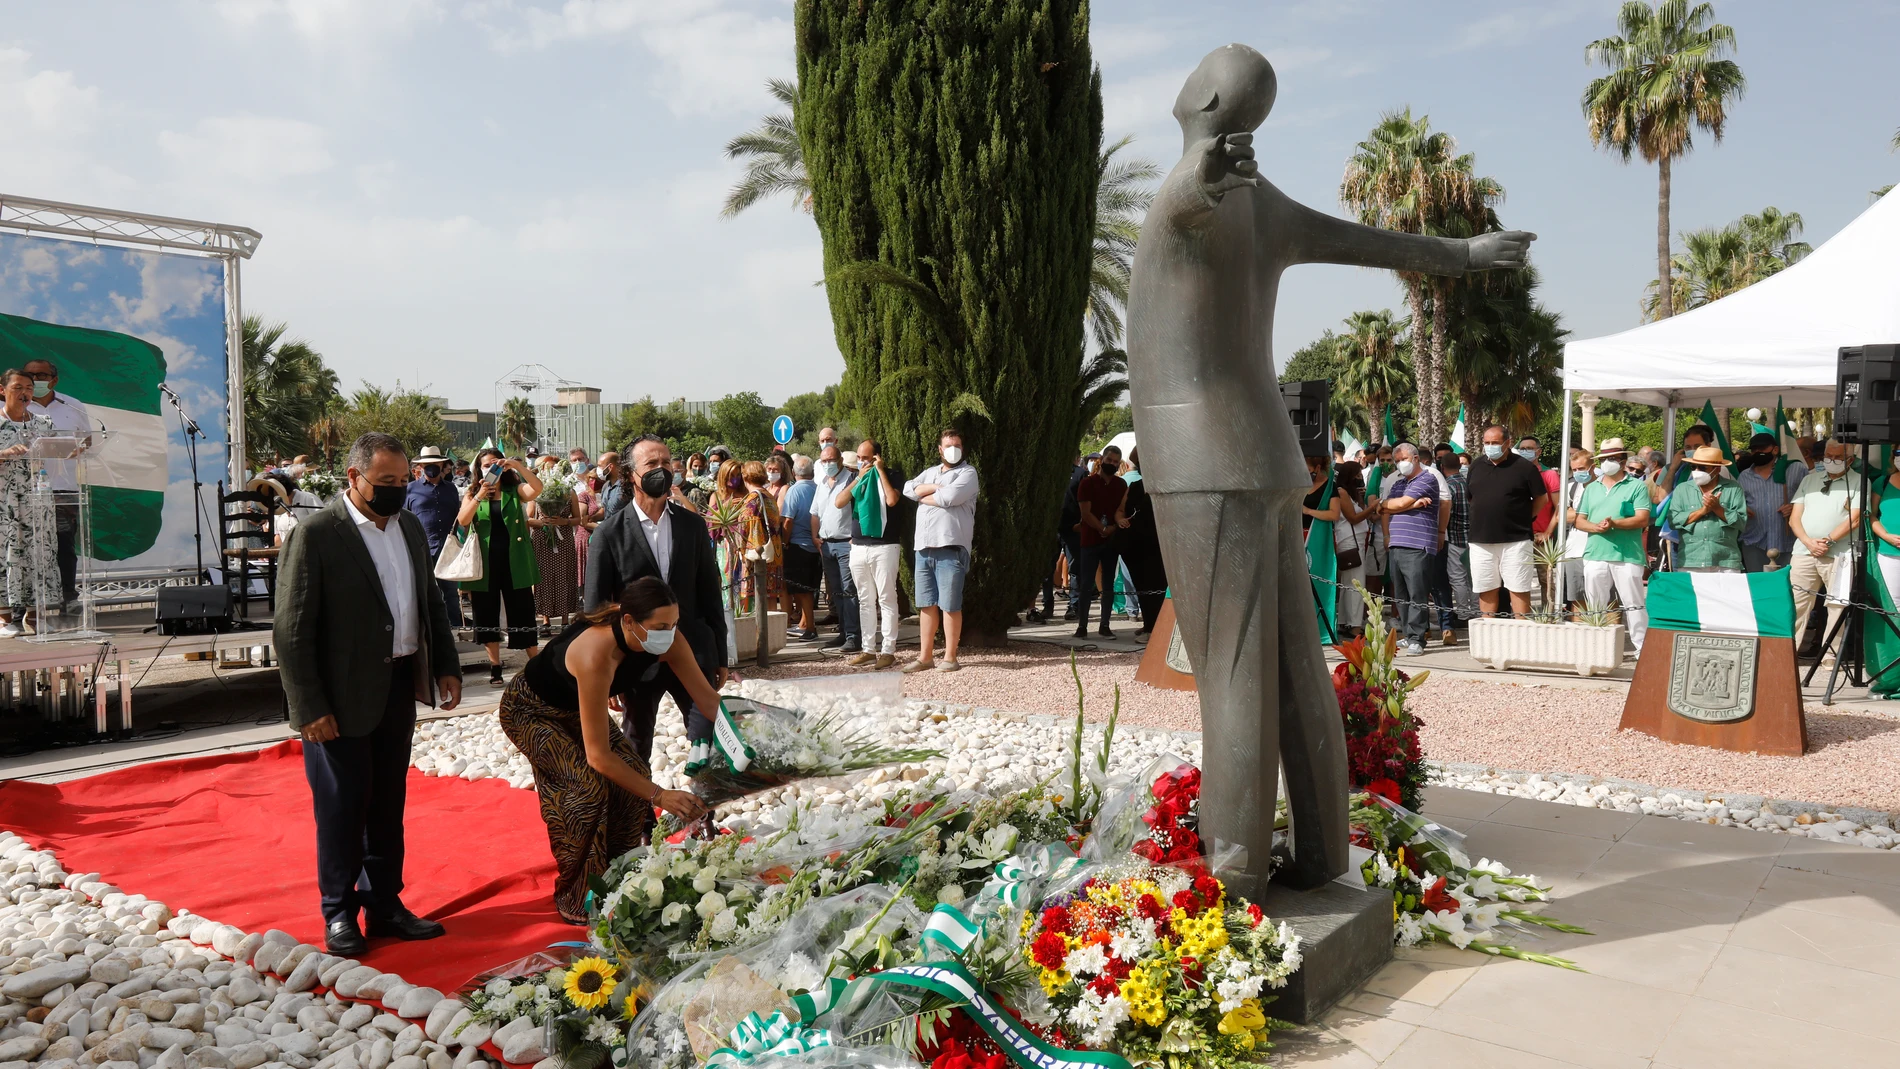 Ofrenda floral en el acto organizado por la Fundación Blas Infante en el homenaje al padre de la Patria andaluza en el aniversario de su fusilamiento. Eduardo Briones / Europa Press